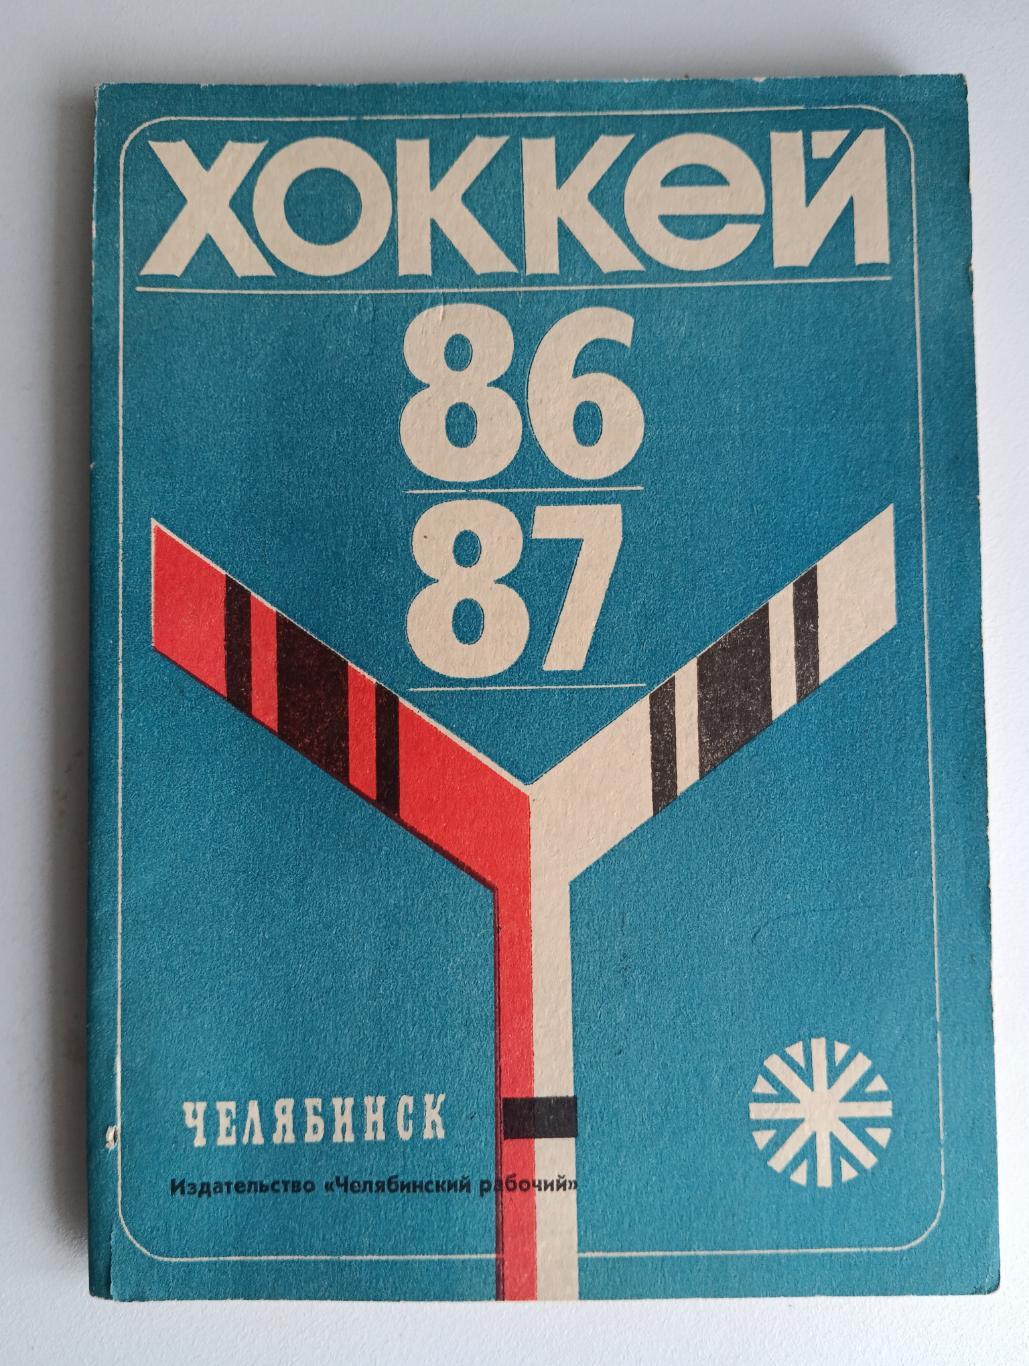 Хоккей Челябинск 86-87